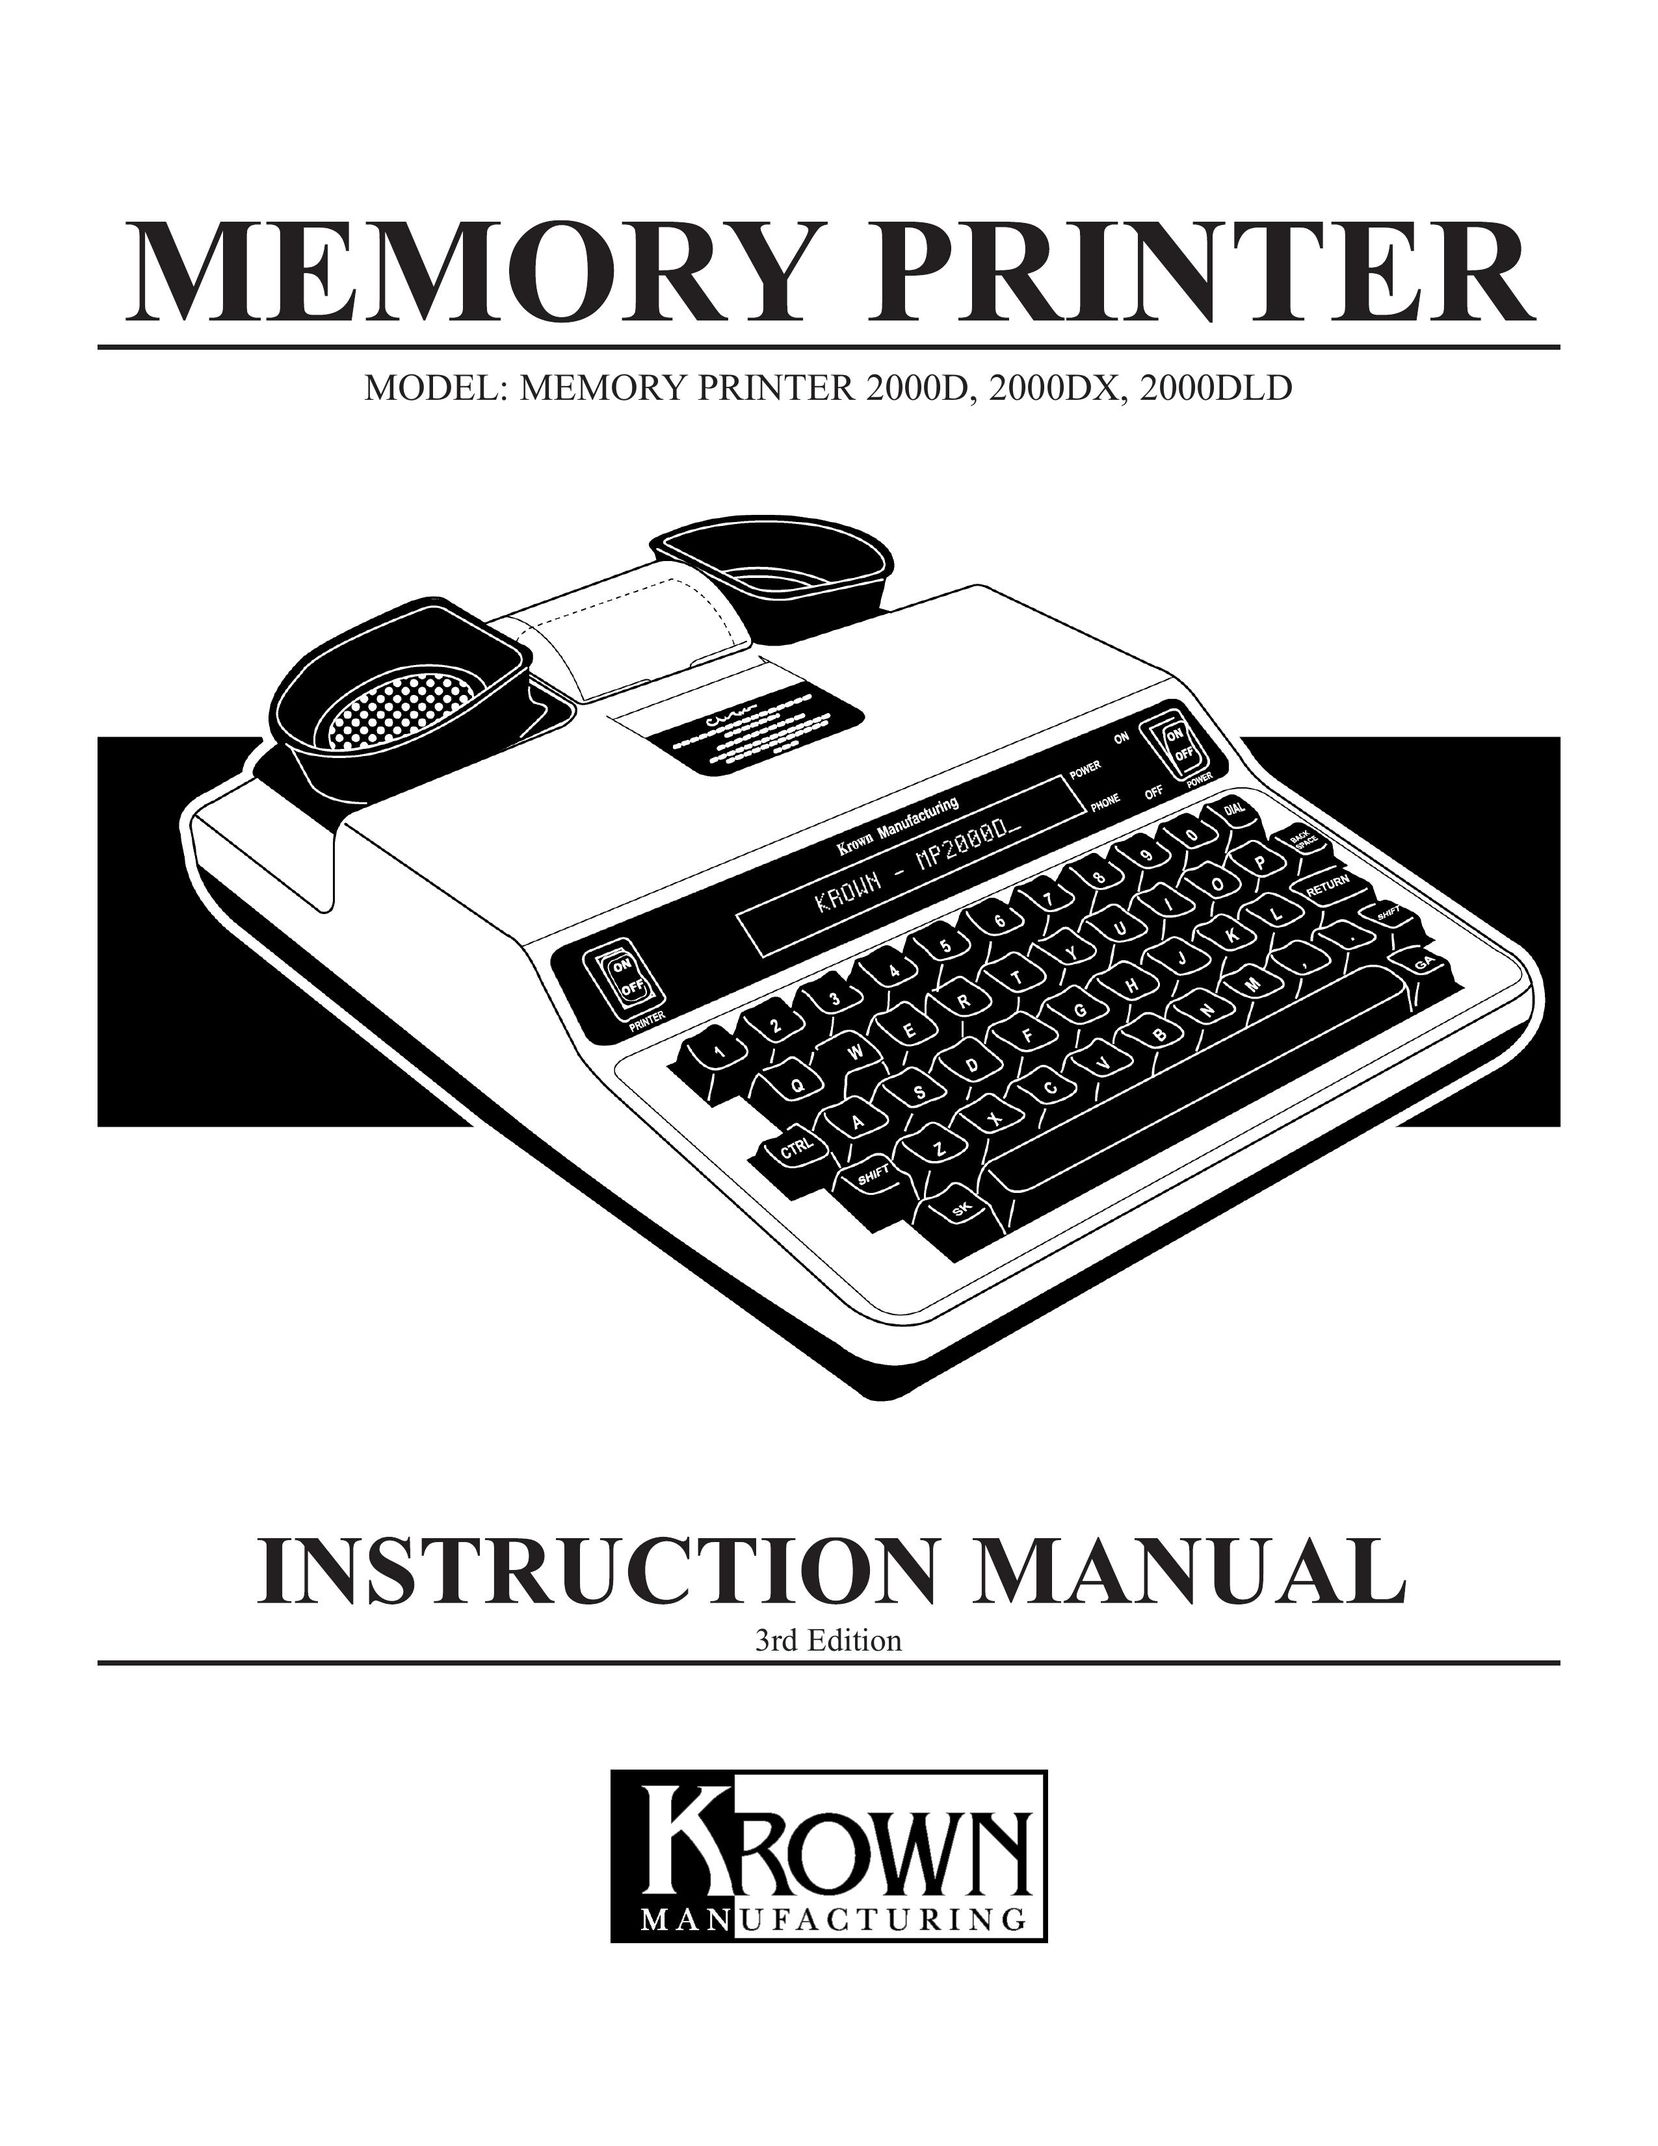 Krown Manufacturing 2000DLD Printer User Manual